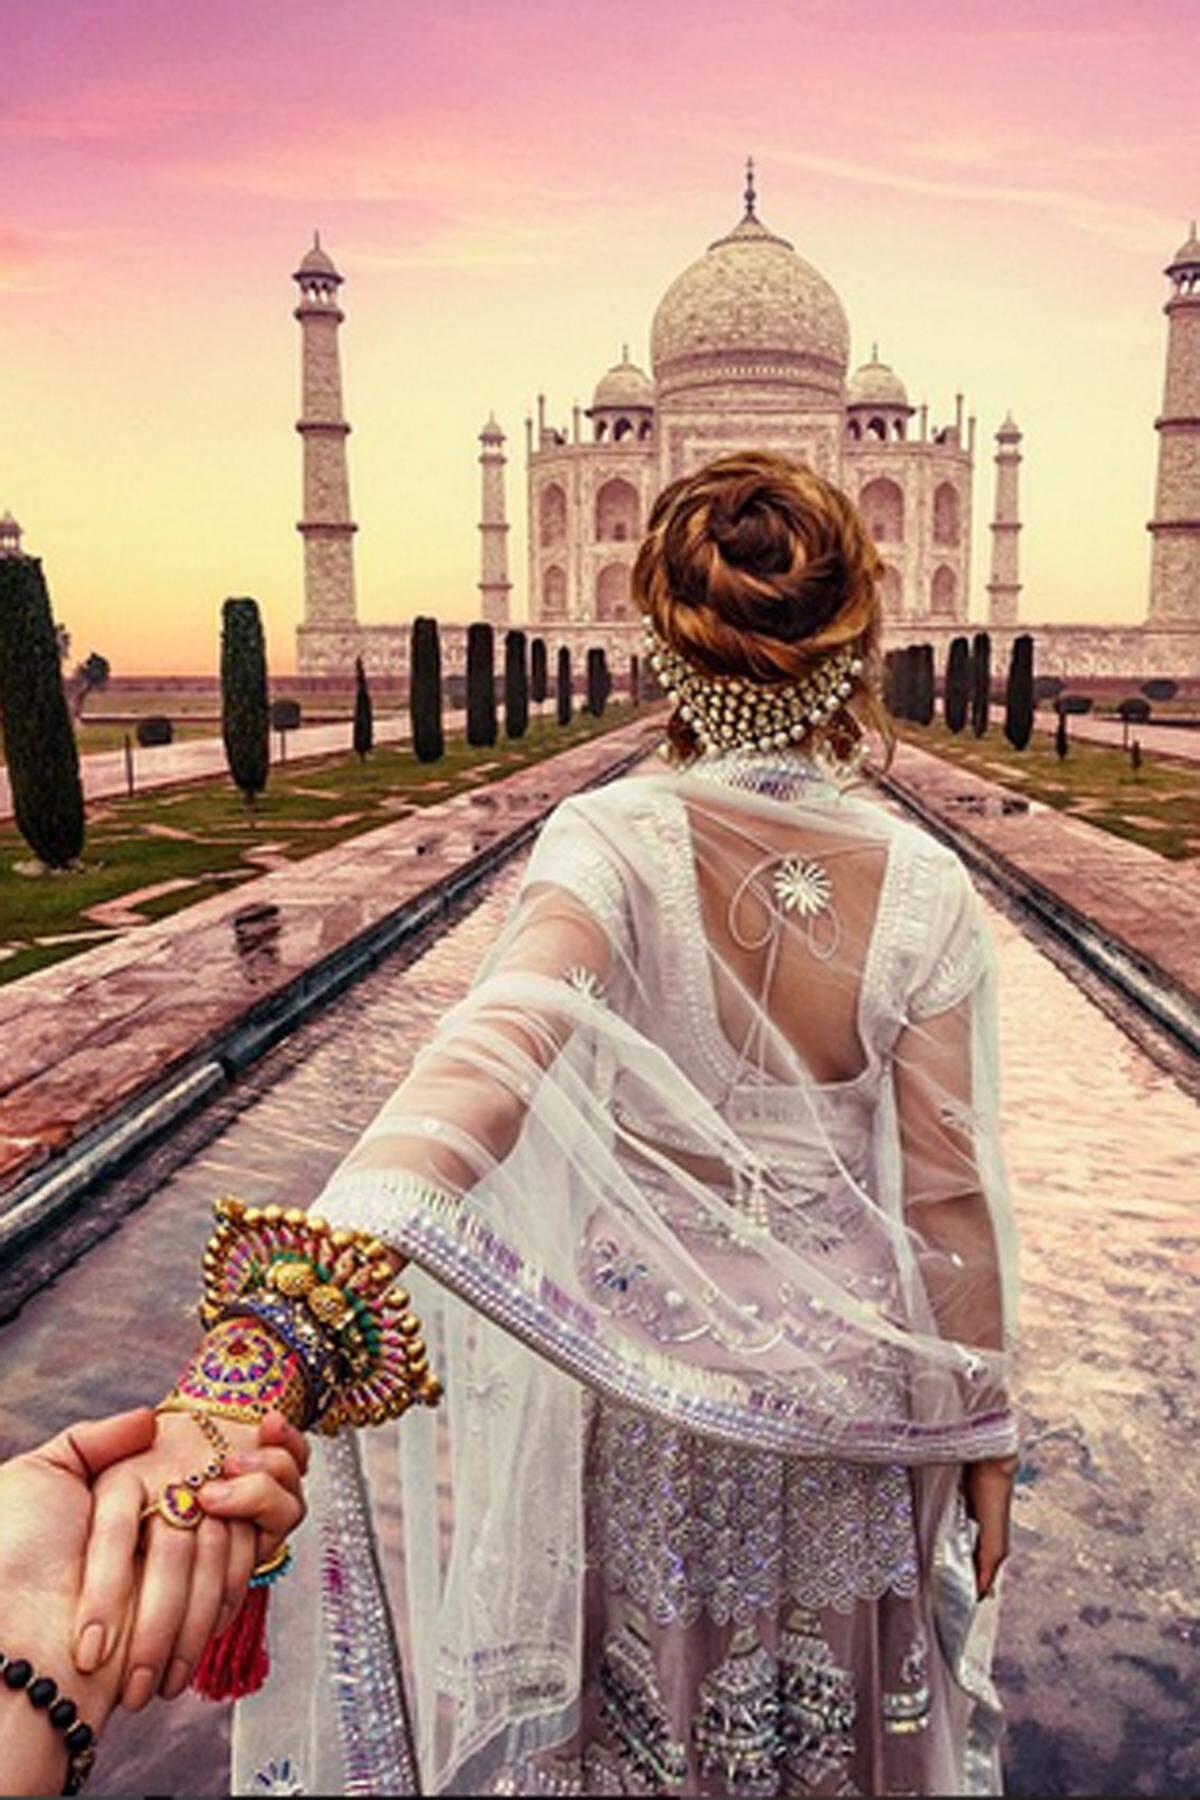 Denn Murad Osmann dokumentiert ihr gemeinsames Leben aus einer einstudierten Perspektive. Vor dem Taj Mahal in Indien.